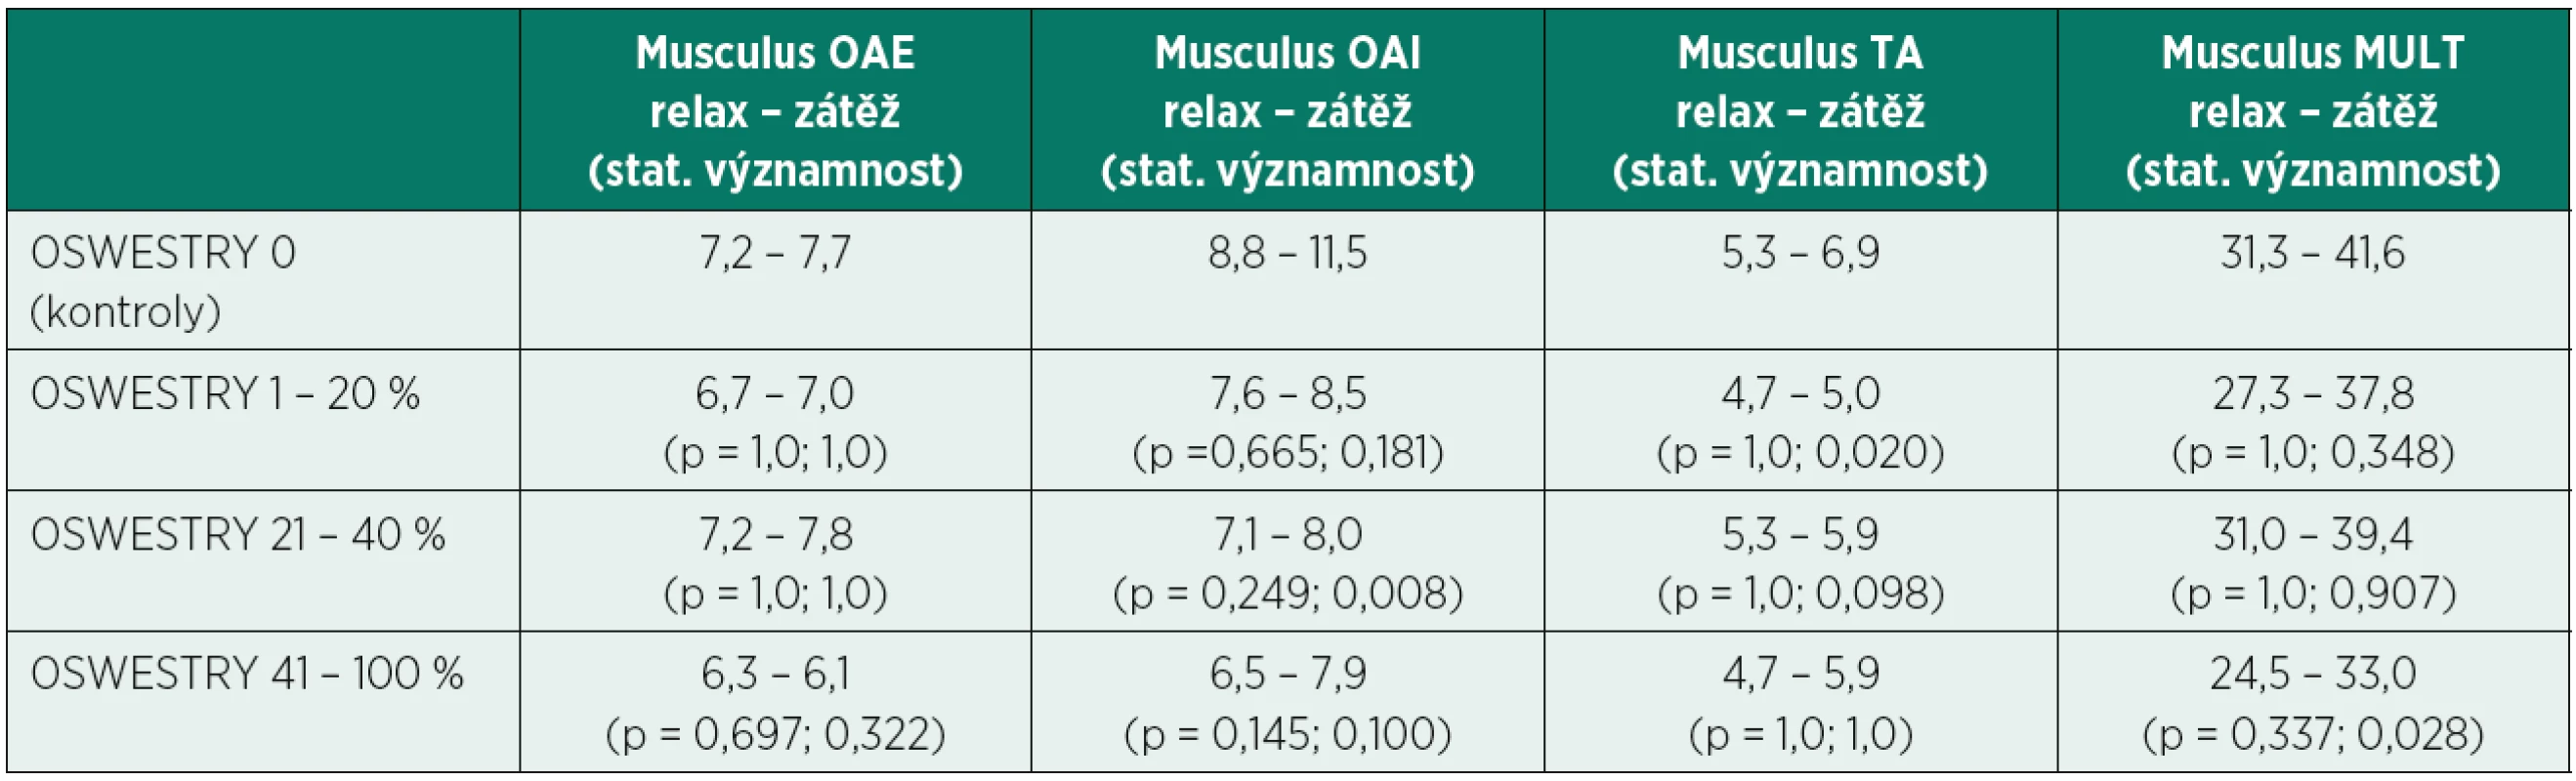 Průměrné hodnoty tloušťky (mm) stabilizačních svalů bederní páteře v klidovém stavu (relax) a v zátěži (zátěž) u kontrolní skupiny (OSWESTRY 0) a tří podskupin pacientů s různým stupněm tíže omezení v běžných denních aktivitách (OSWESTRY 1 – 20 %, 21 – 40 %, 41 – 100 %). Statisticky významně nižší hodnoty v tloušťce svalů byly zaznamenány ve třech kombinacích (p < 0,05).